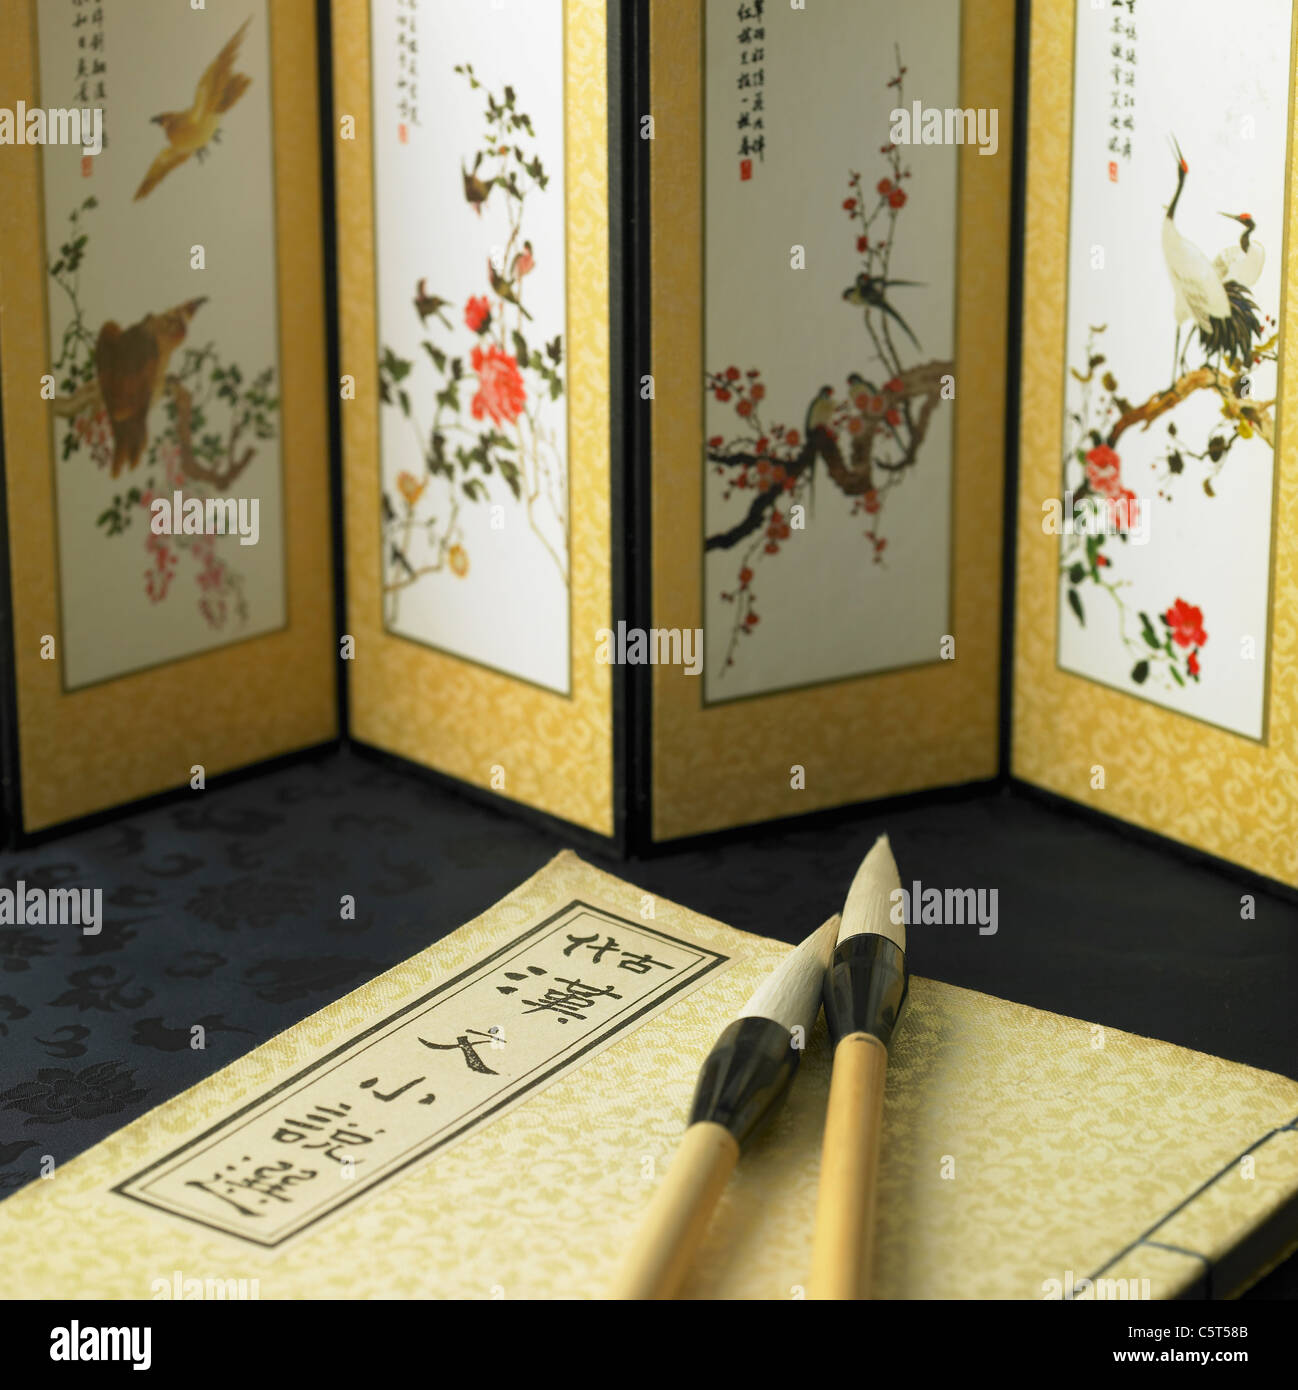 Koreanische antikes Buch und Kalligraphie Bürsten mit Paravent Stockfoto